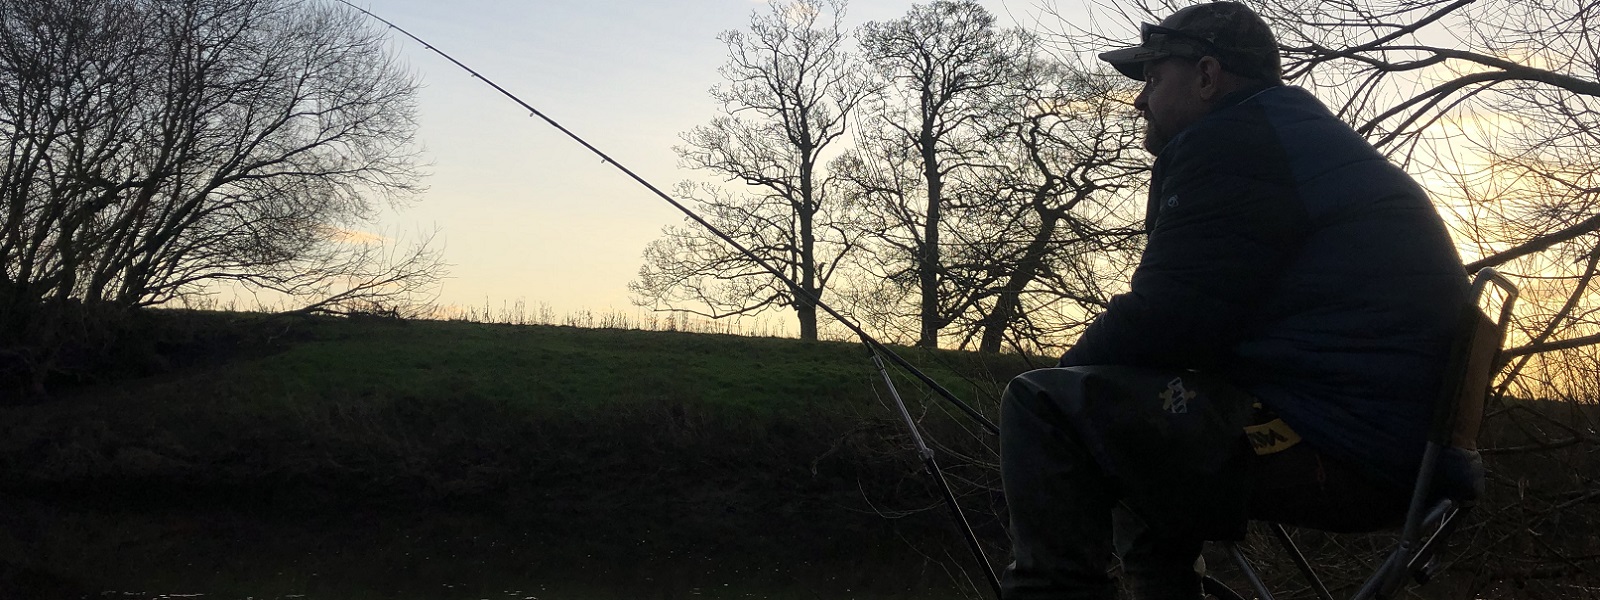 Man fishing at a river bank